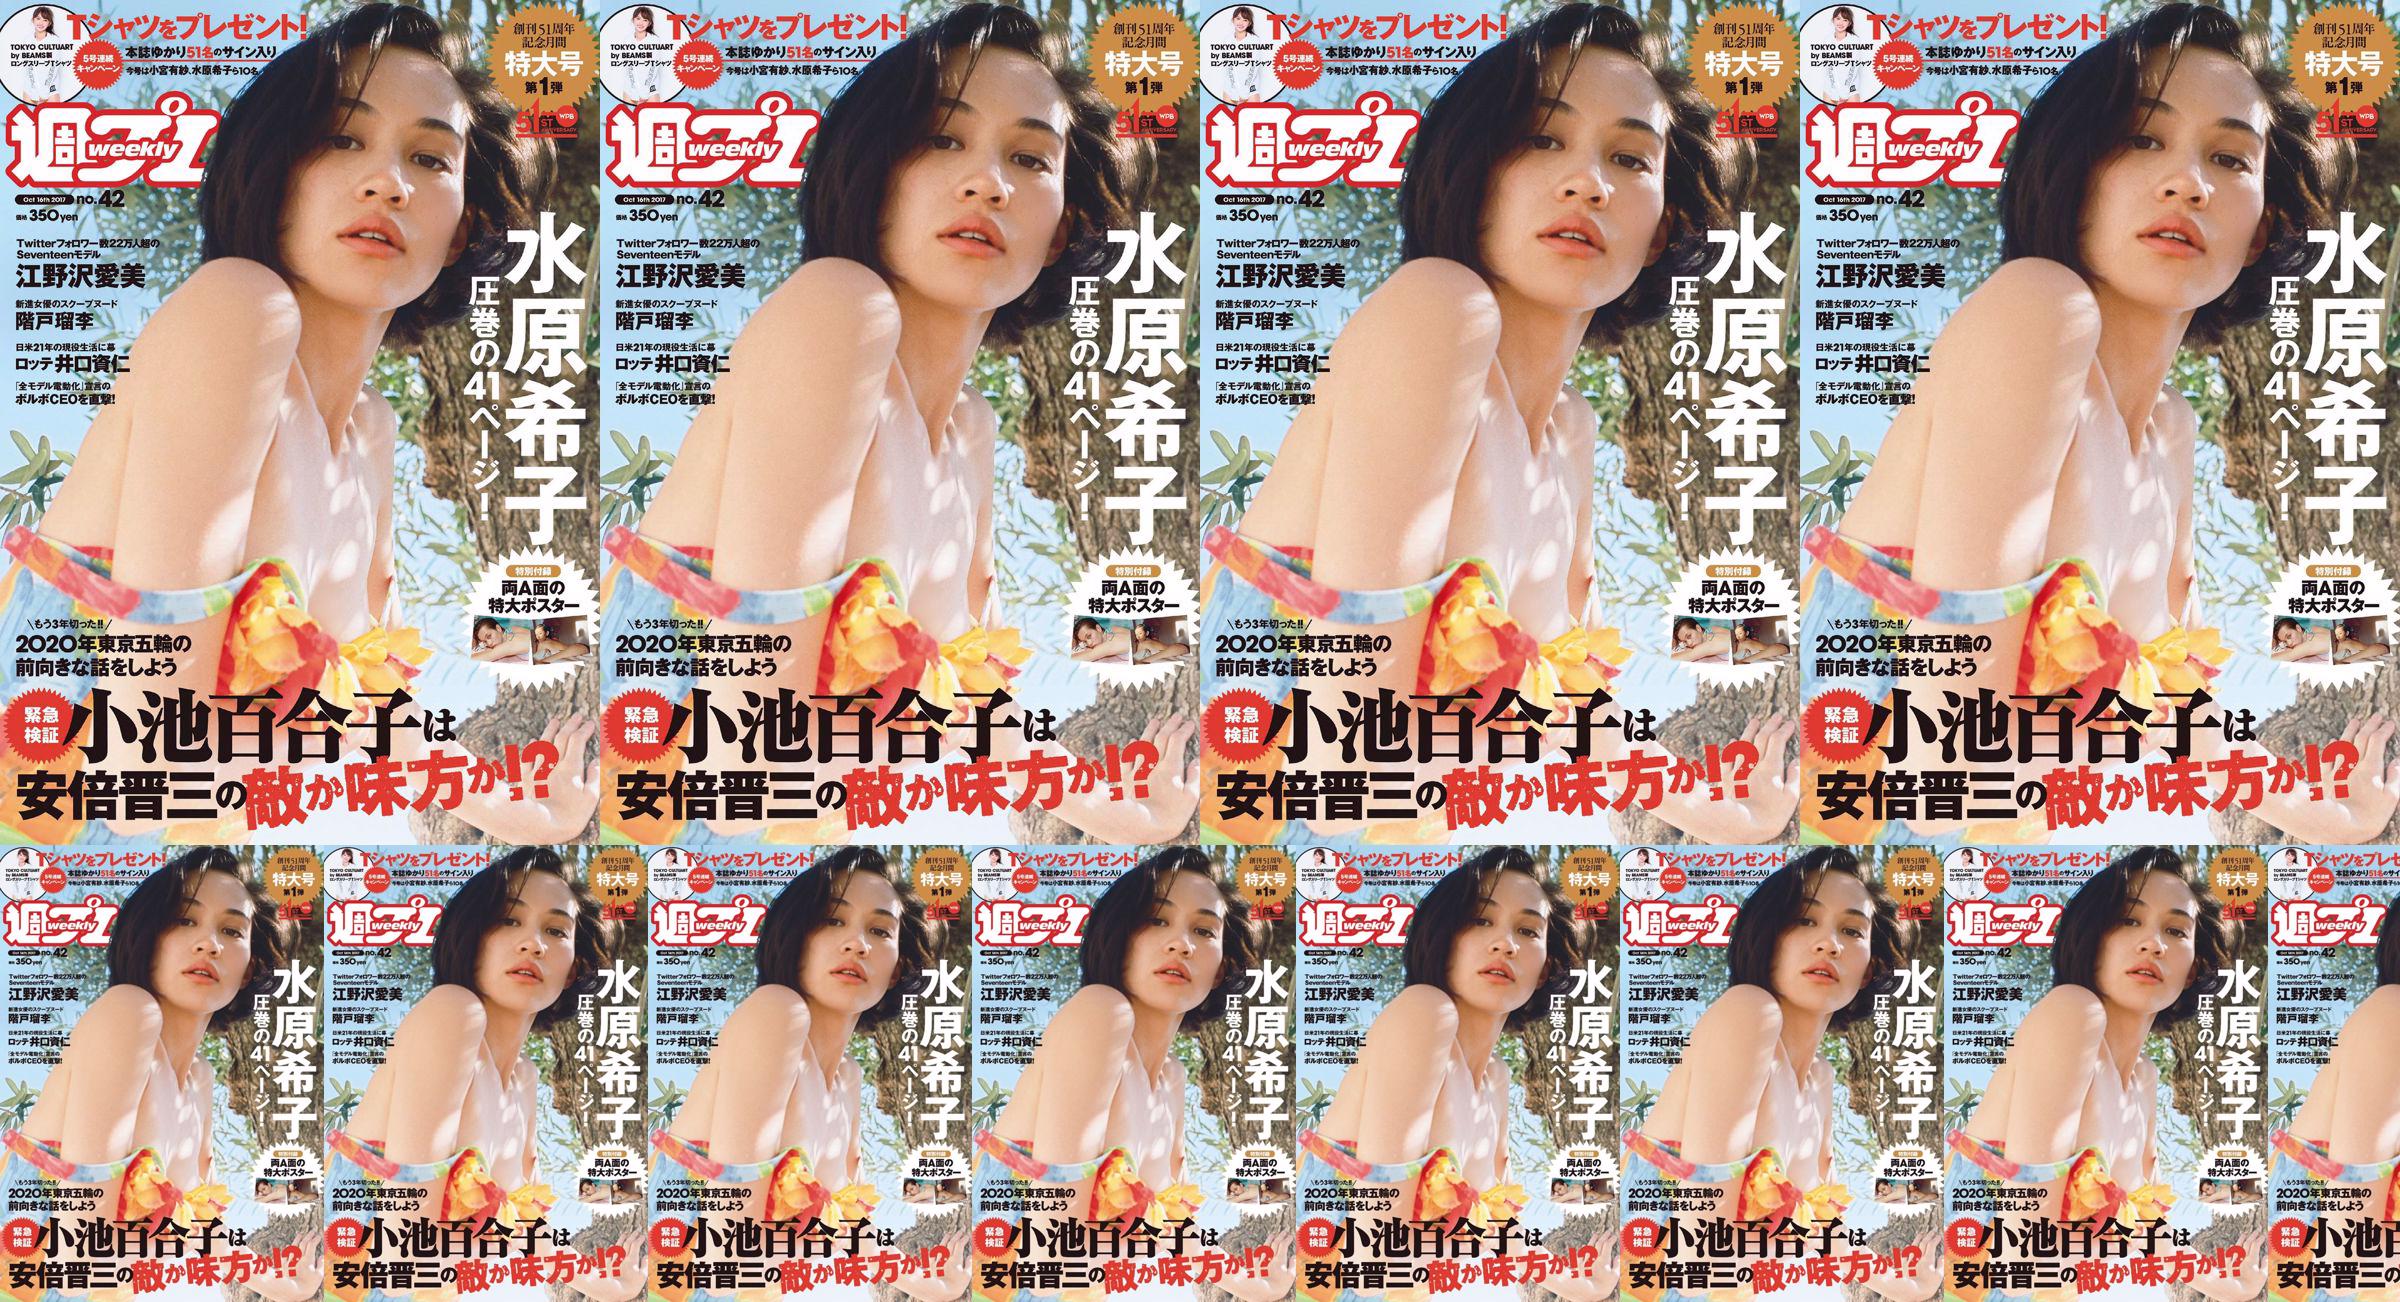 Kiko Mizuhara Manami Enosawa Serina Fukui Miu Nakamura Ruri Shinato [Weekly Playboy] 2017 Majalah Foto No.42 No.5796de Halaman 6